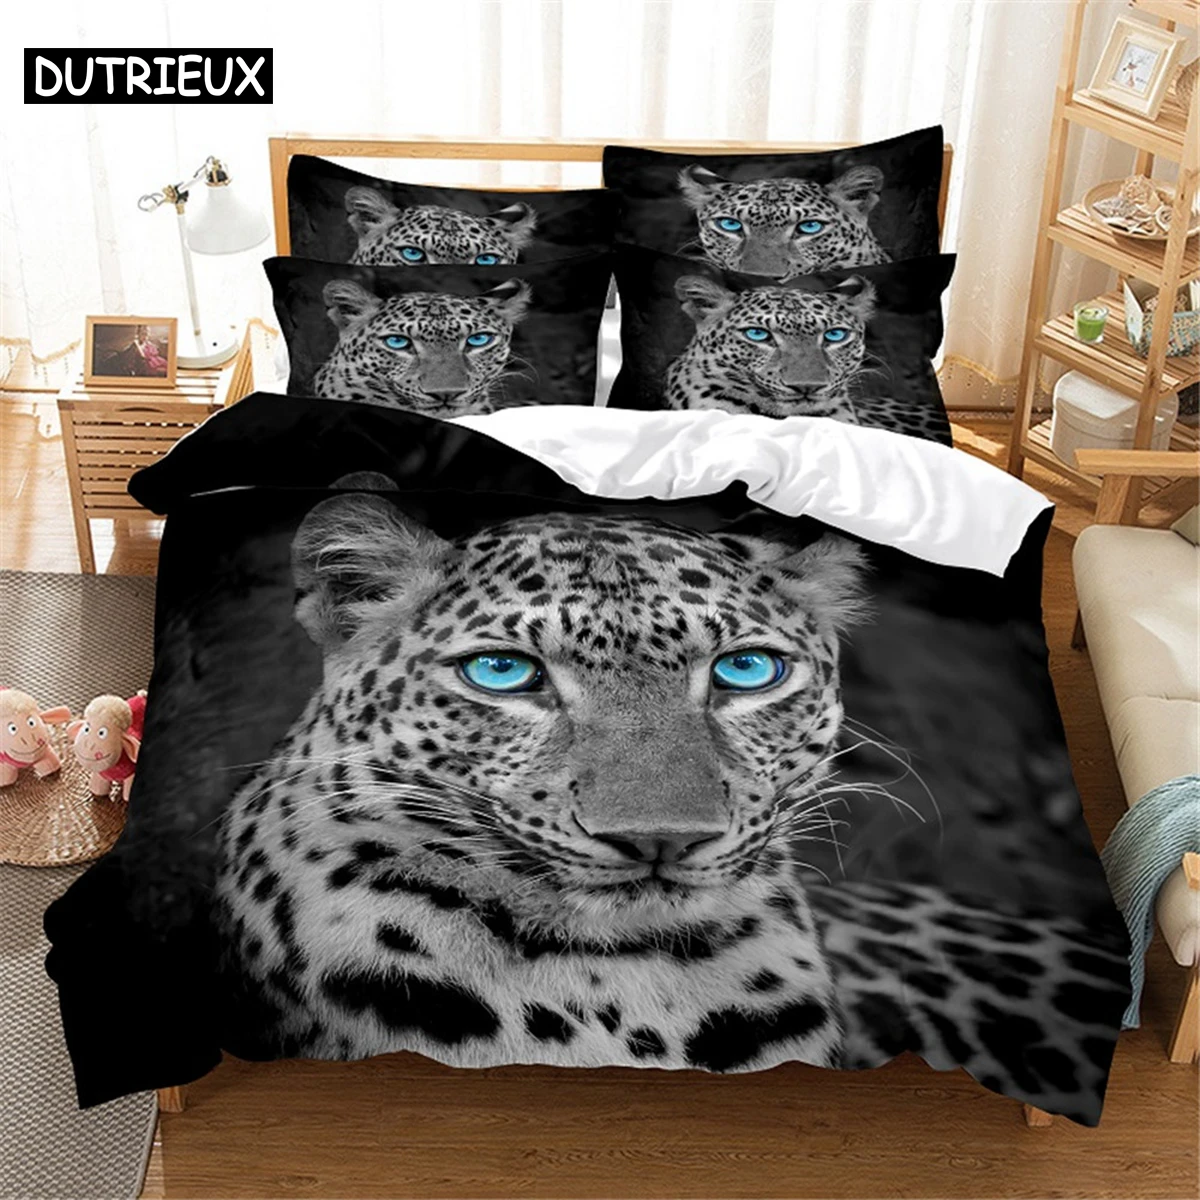 

3D leopard Bedding Set Queen Bedding Duvet Cover Set Bedding Set Bed Cover Cotton Queen Bedroom Bed Cover Set Bed Set Bedding